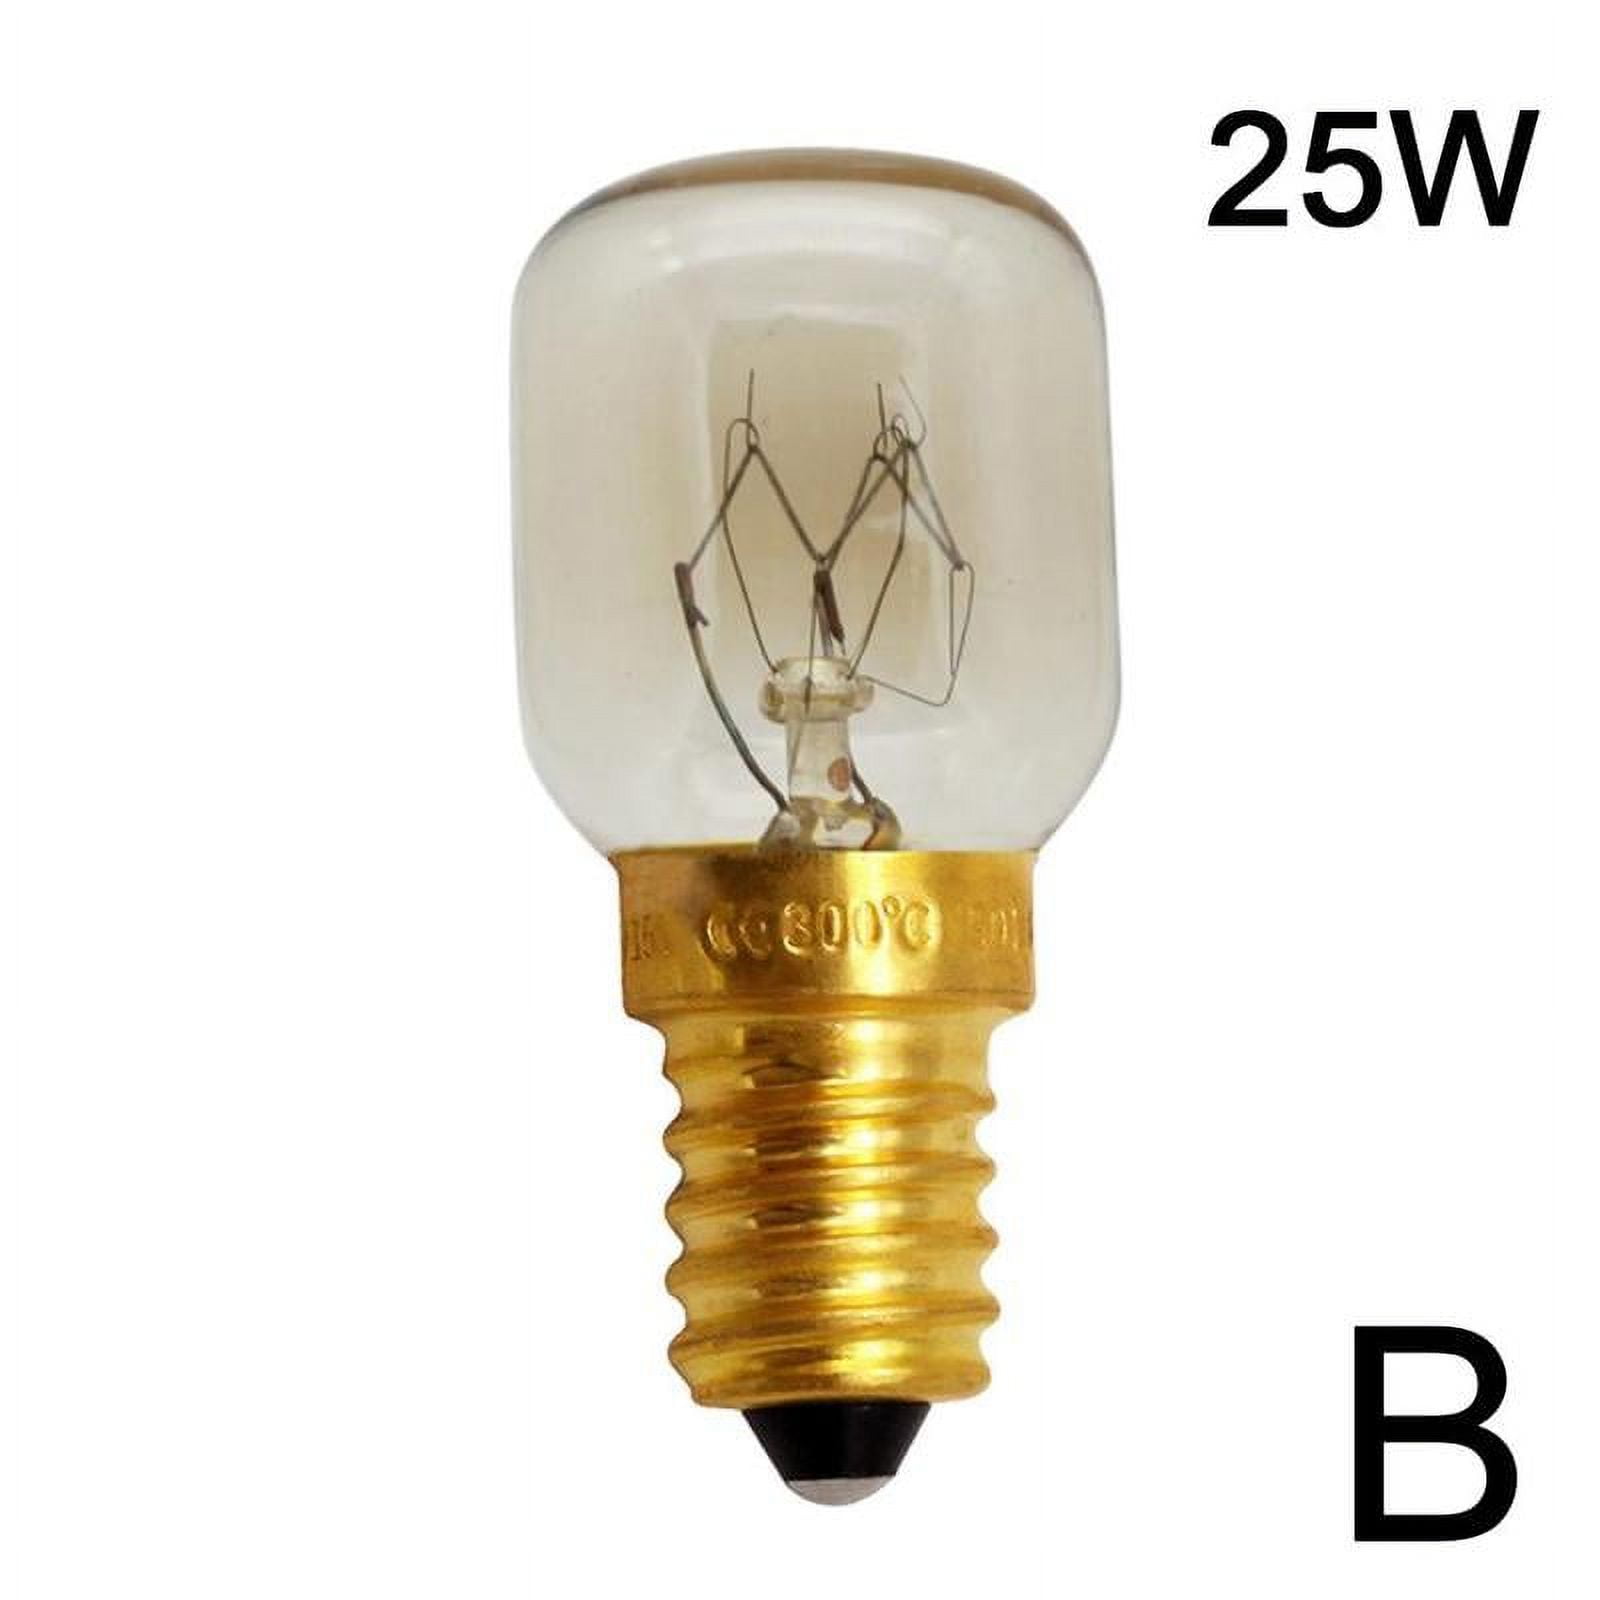 1pc E14 25w 15w Lamps Oven Light Cooker Heat Bulb 220-240v V2C5 High  Resistant G1V7 